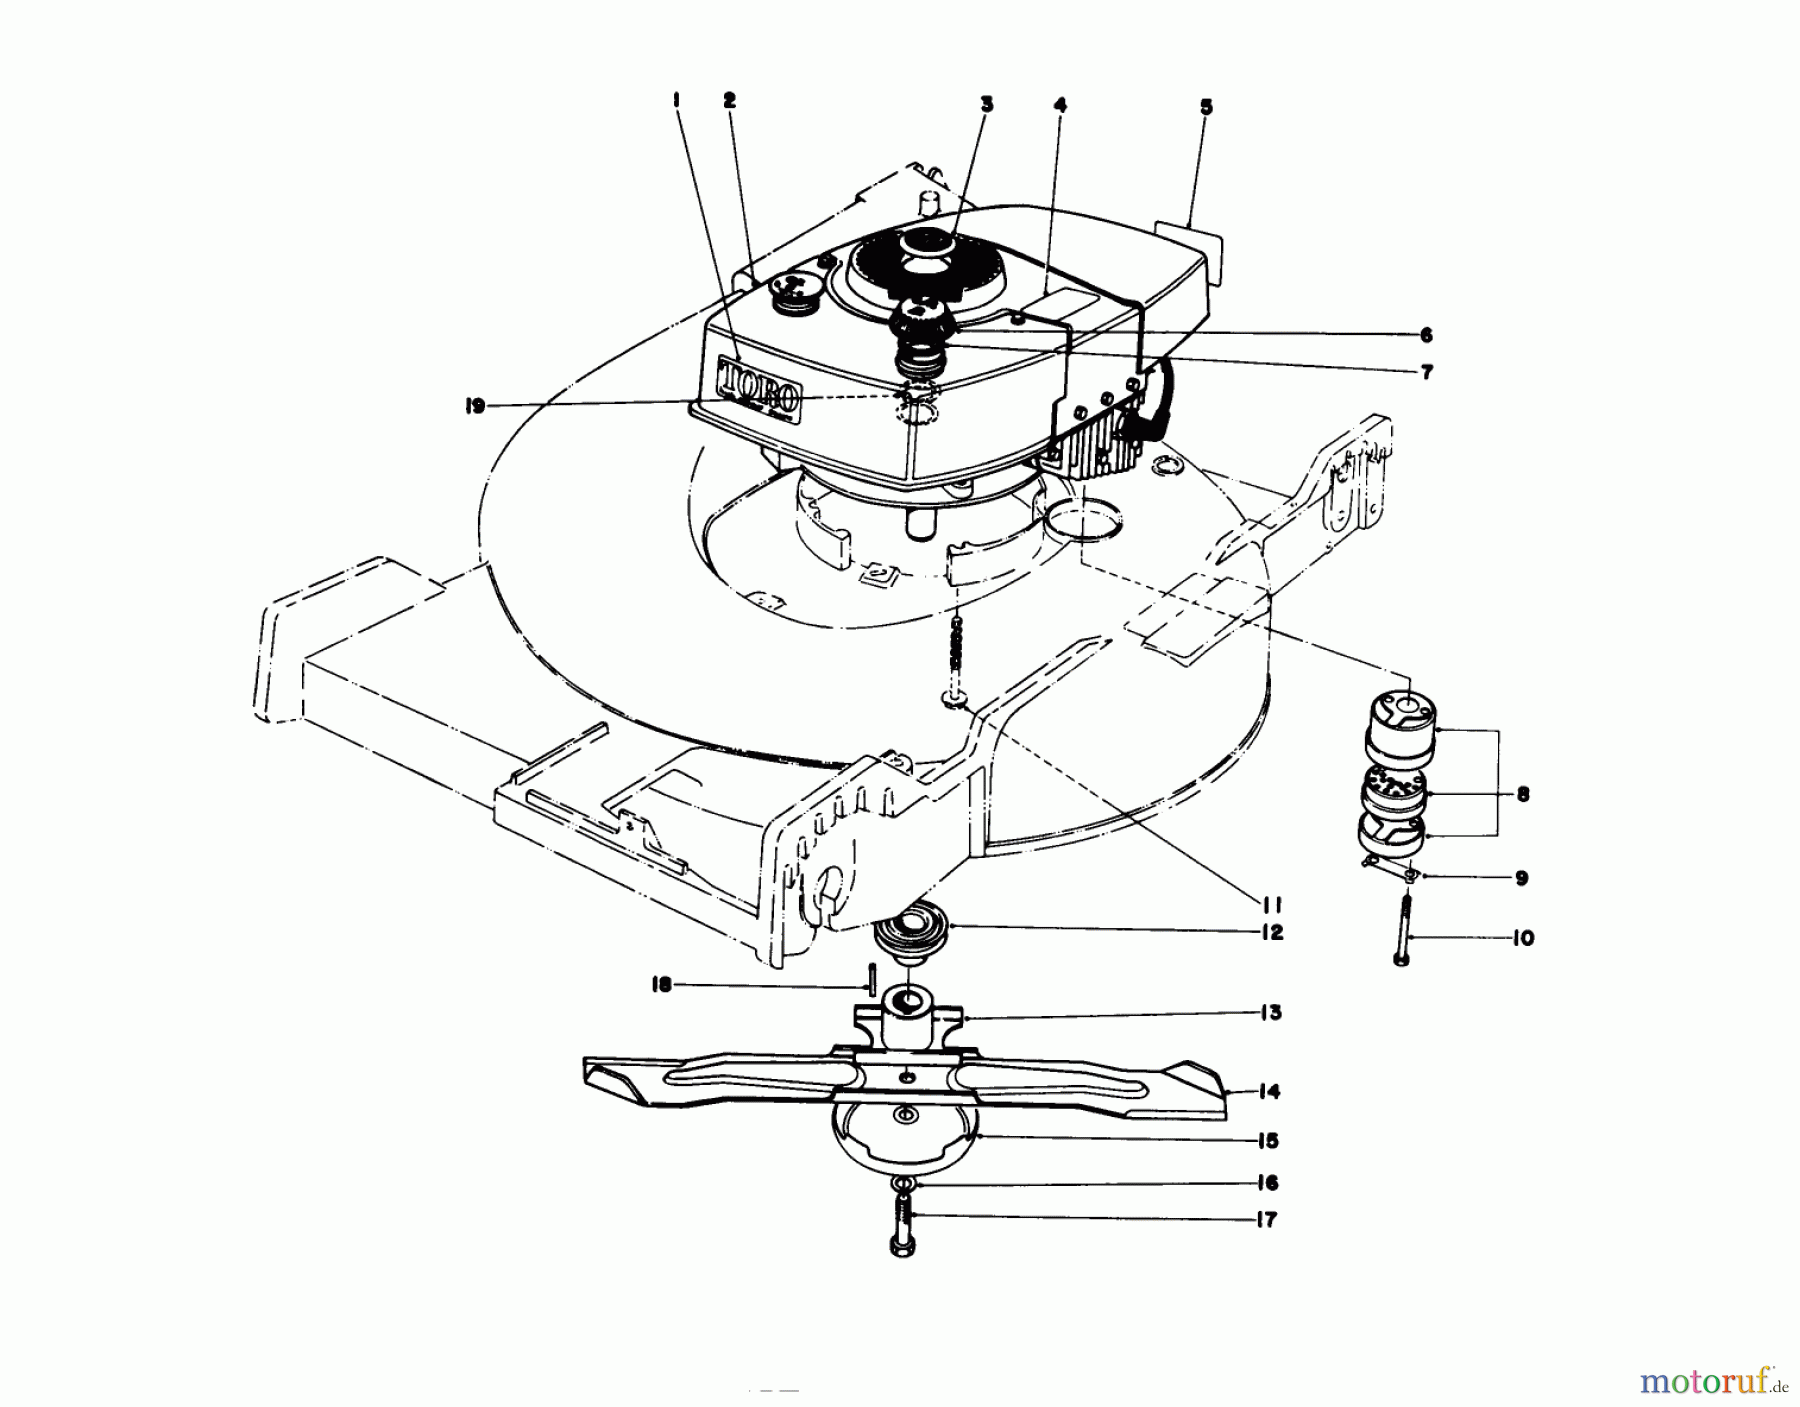  Toro Neu Mowers, Walk-Behind Seite 1 20575 - Toro Lawnmower, 1978 (8000001-8007500) ENGINE ASSEMBLY